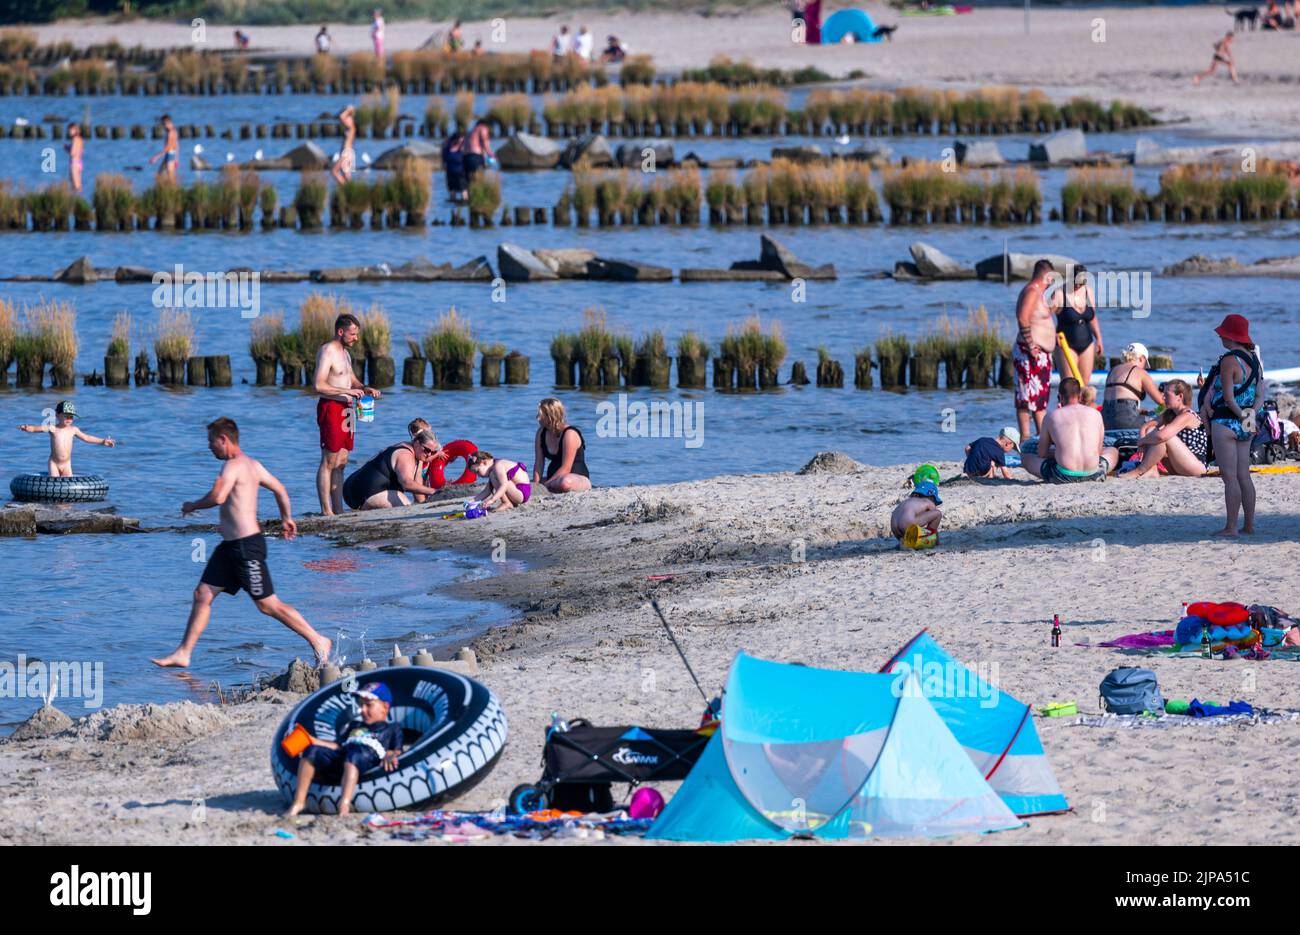 16. August 2022, Mecklenburg-Vorpommern, Ueckermünde: Der Strand an der  Stettin-Lagune ist trotz Warnungen vor Wasserverschmutzung in der oder gut  besucht. Nach dem massiven Fischsterben an der oder rät die Landesregierung  Mecklenburg-Vorpommern von